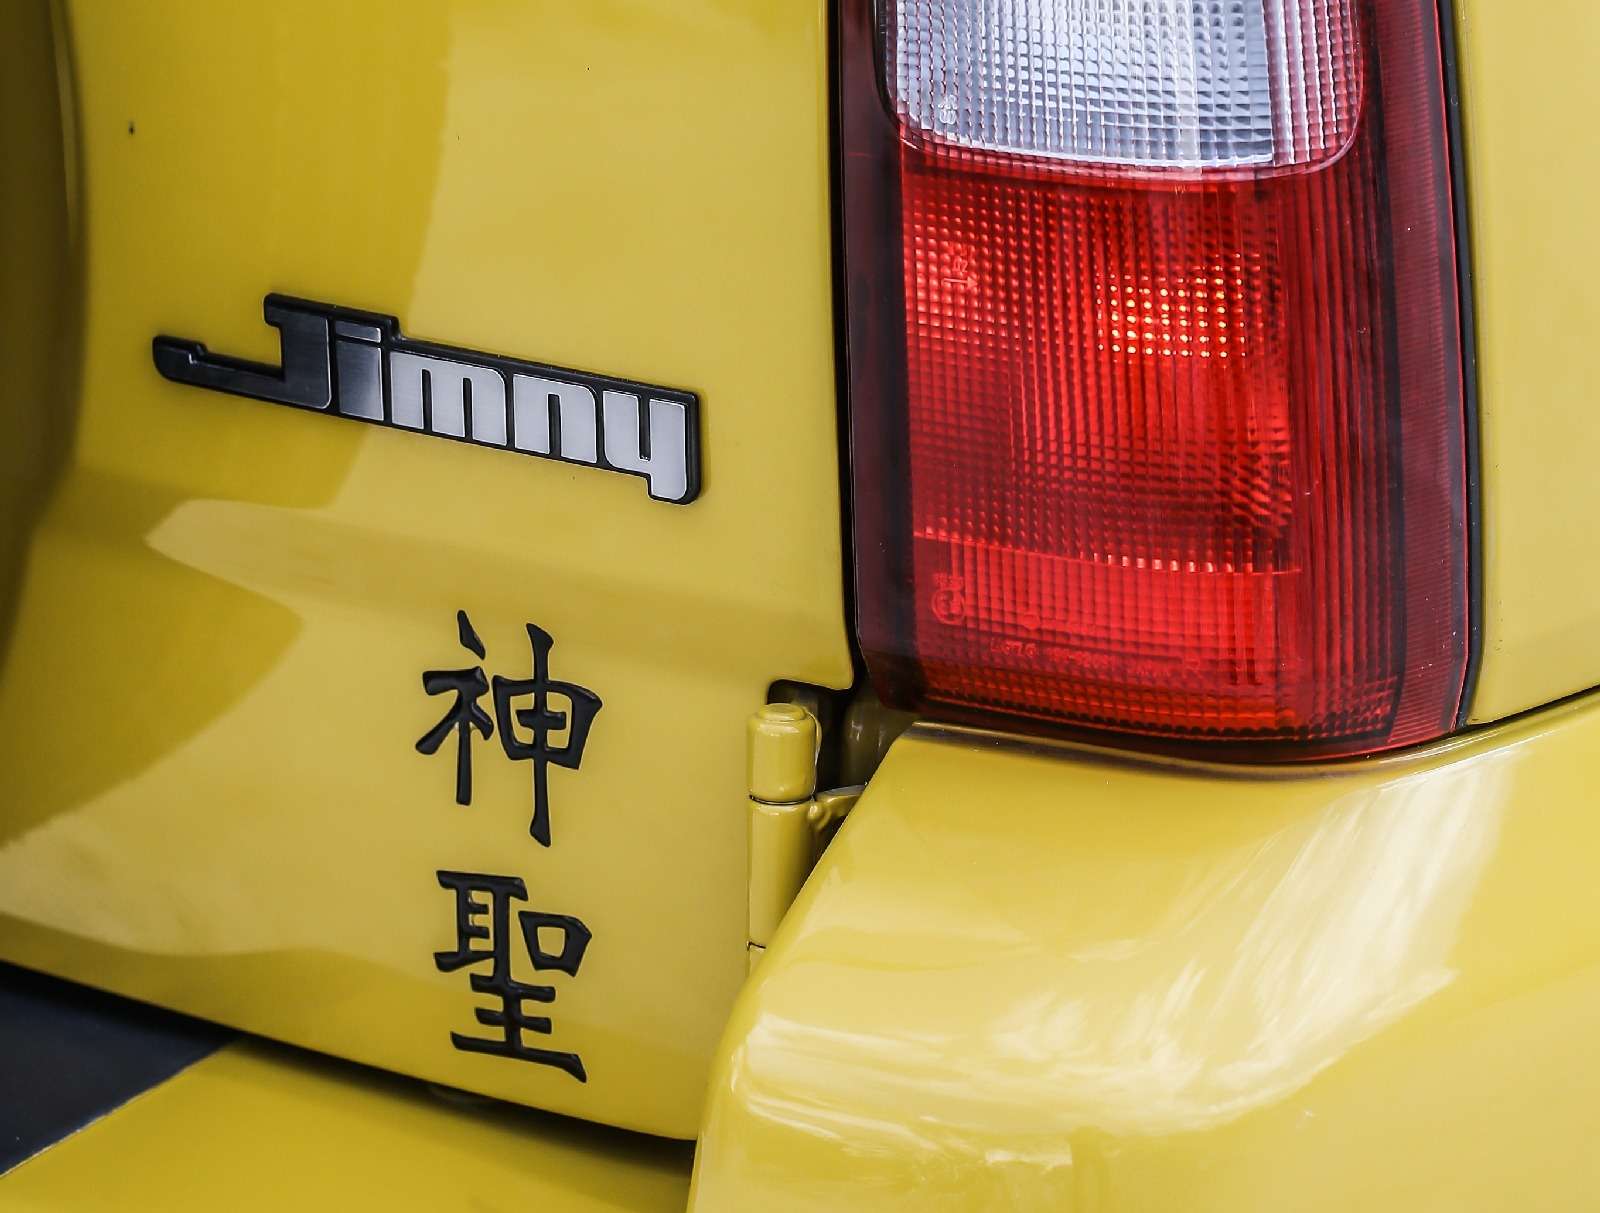 Святая простота: вышла спецверсия вседорожника Suzuki Jimny — фото 650247